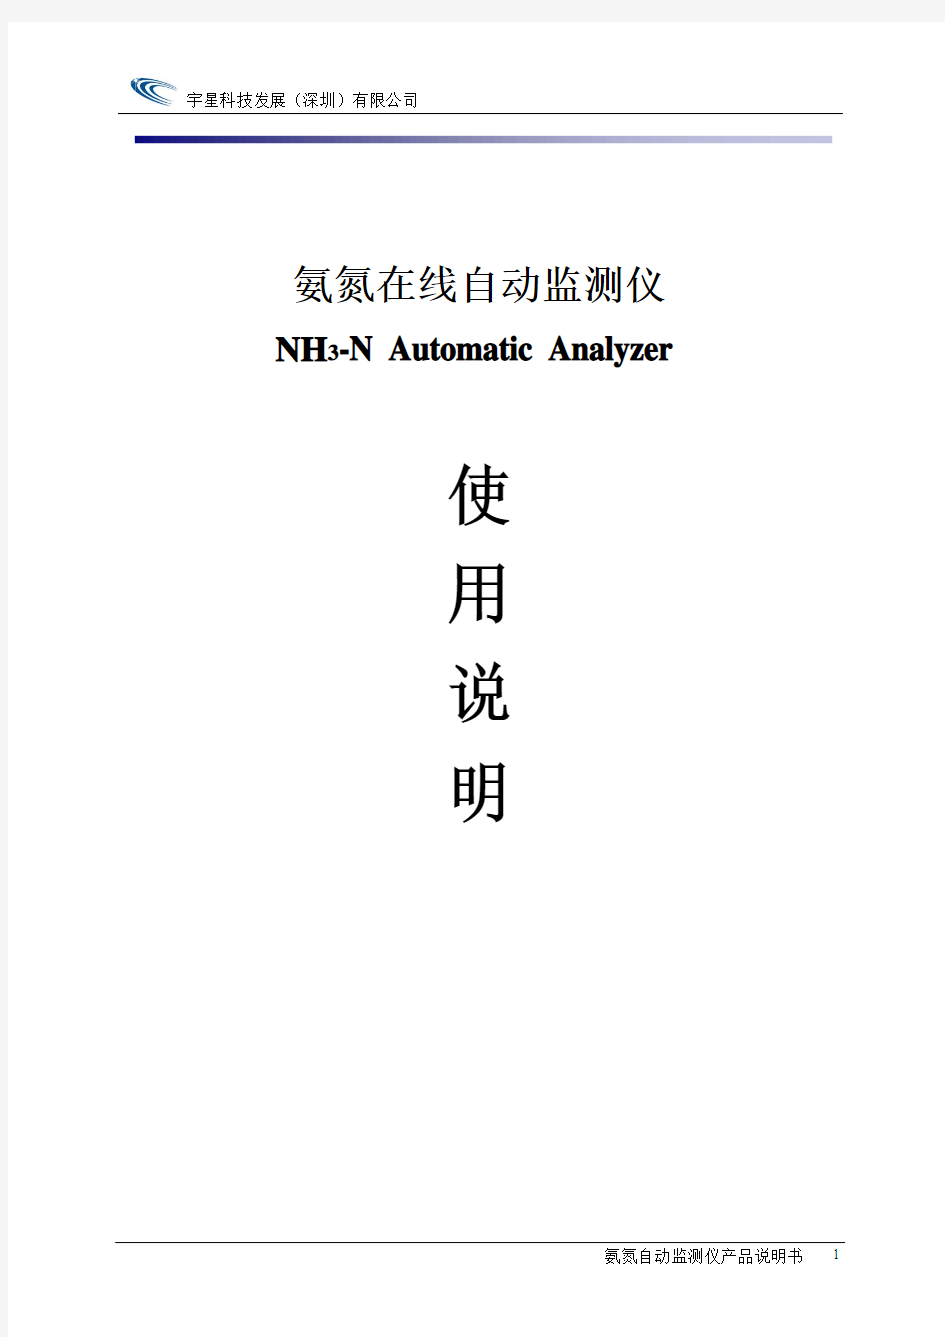 氨氮自动分析仪说明书